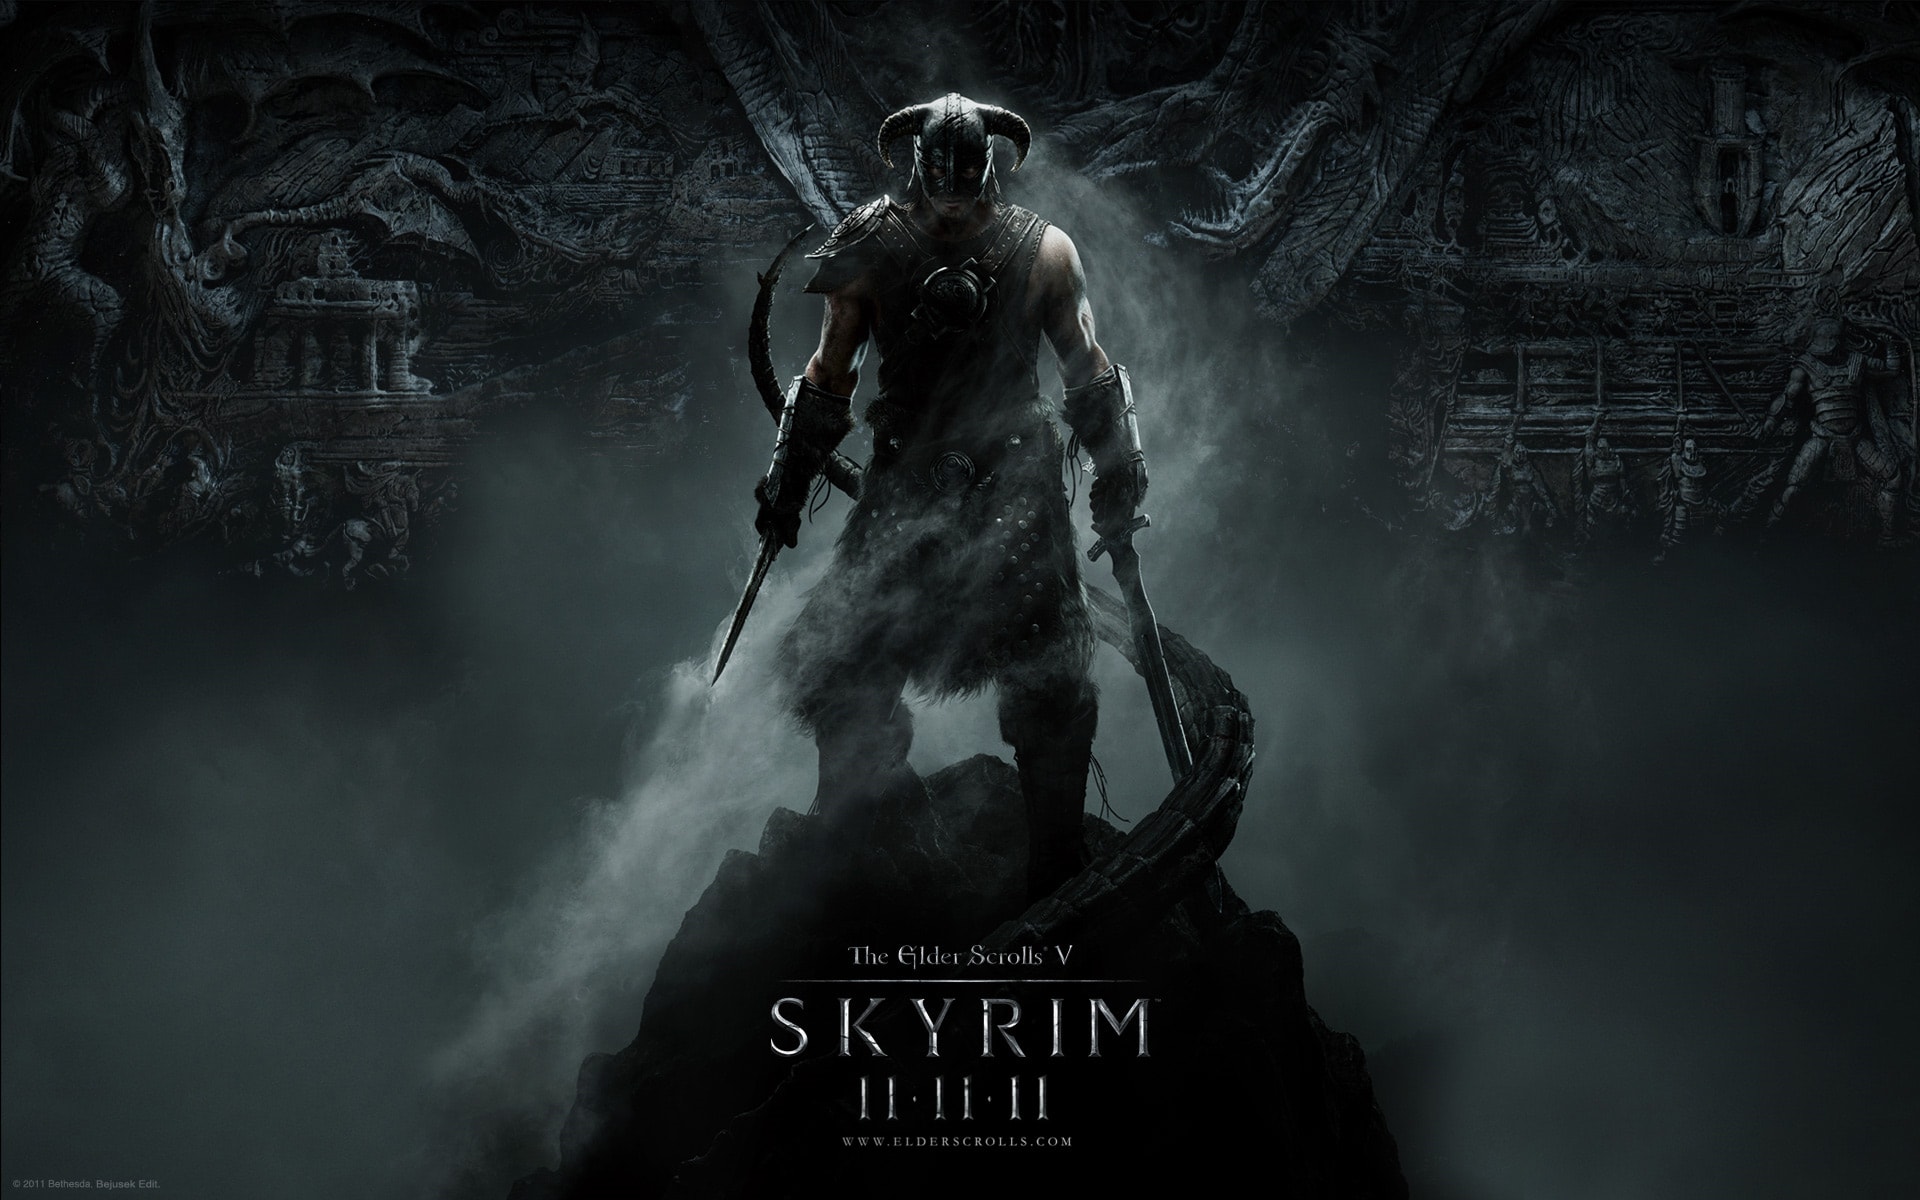 The Elder Scrolls V Skyrim Wallpaper - Skyrim The Elder Scrolls , HD Wallpaper & Backgrounds